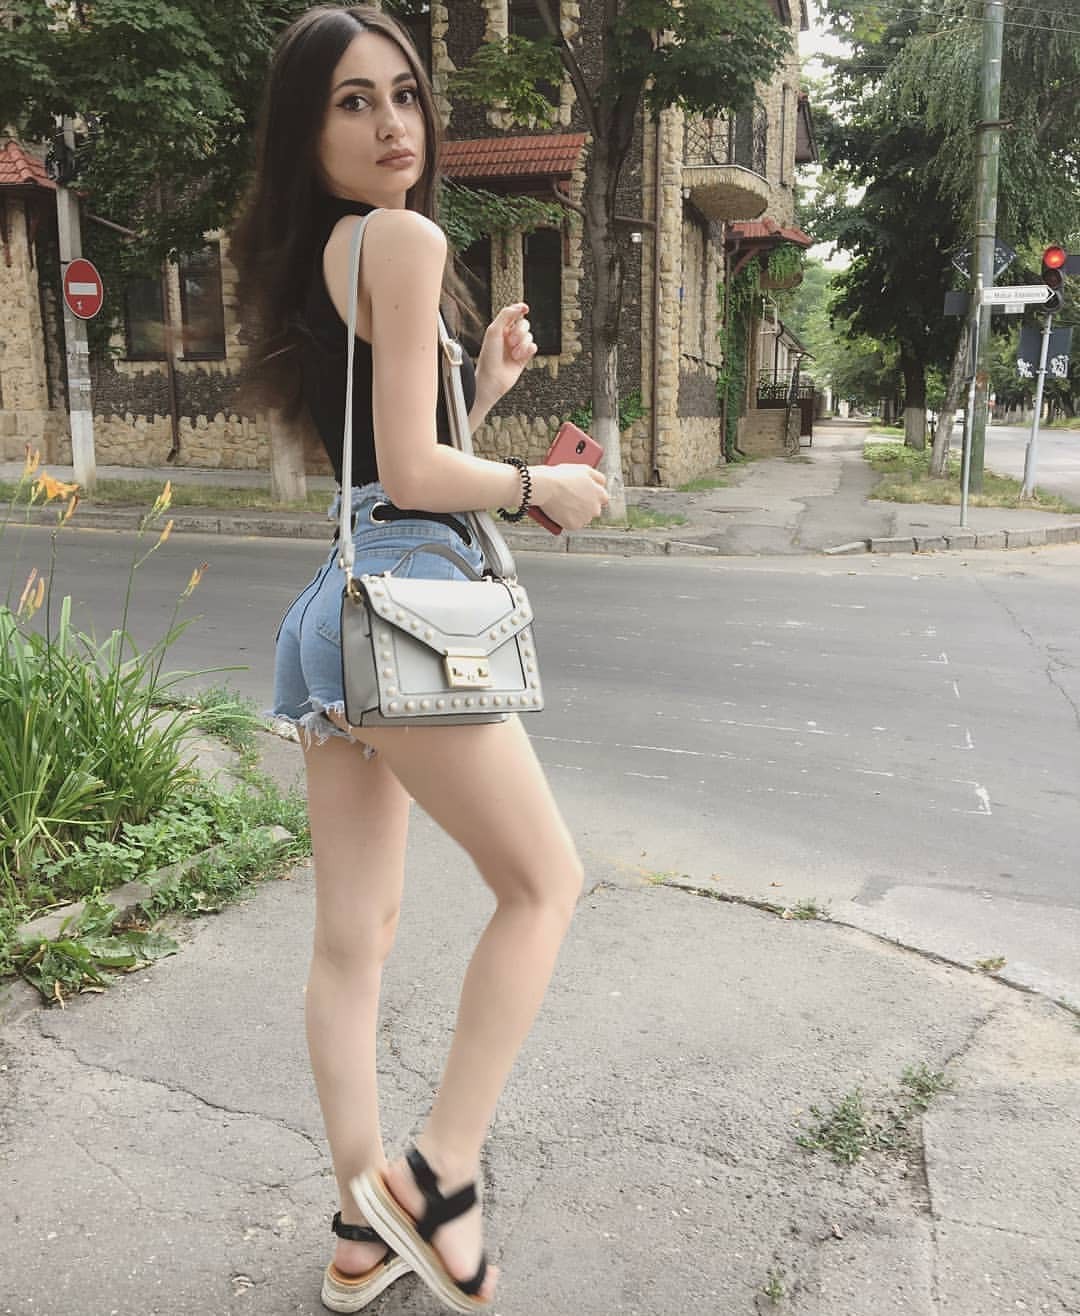 Asian Girl Hot Instagram